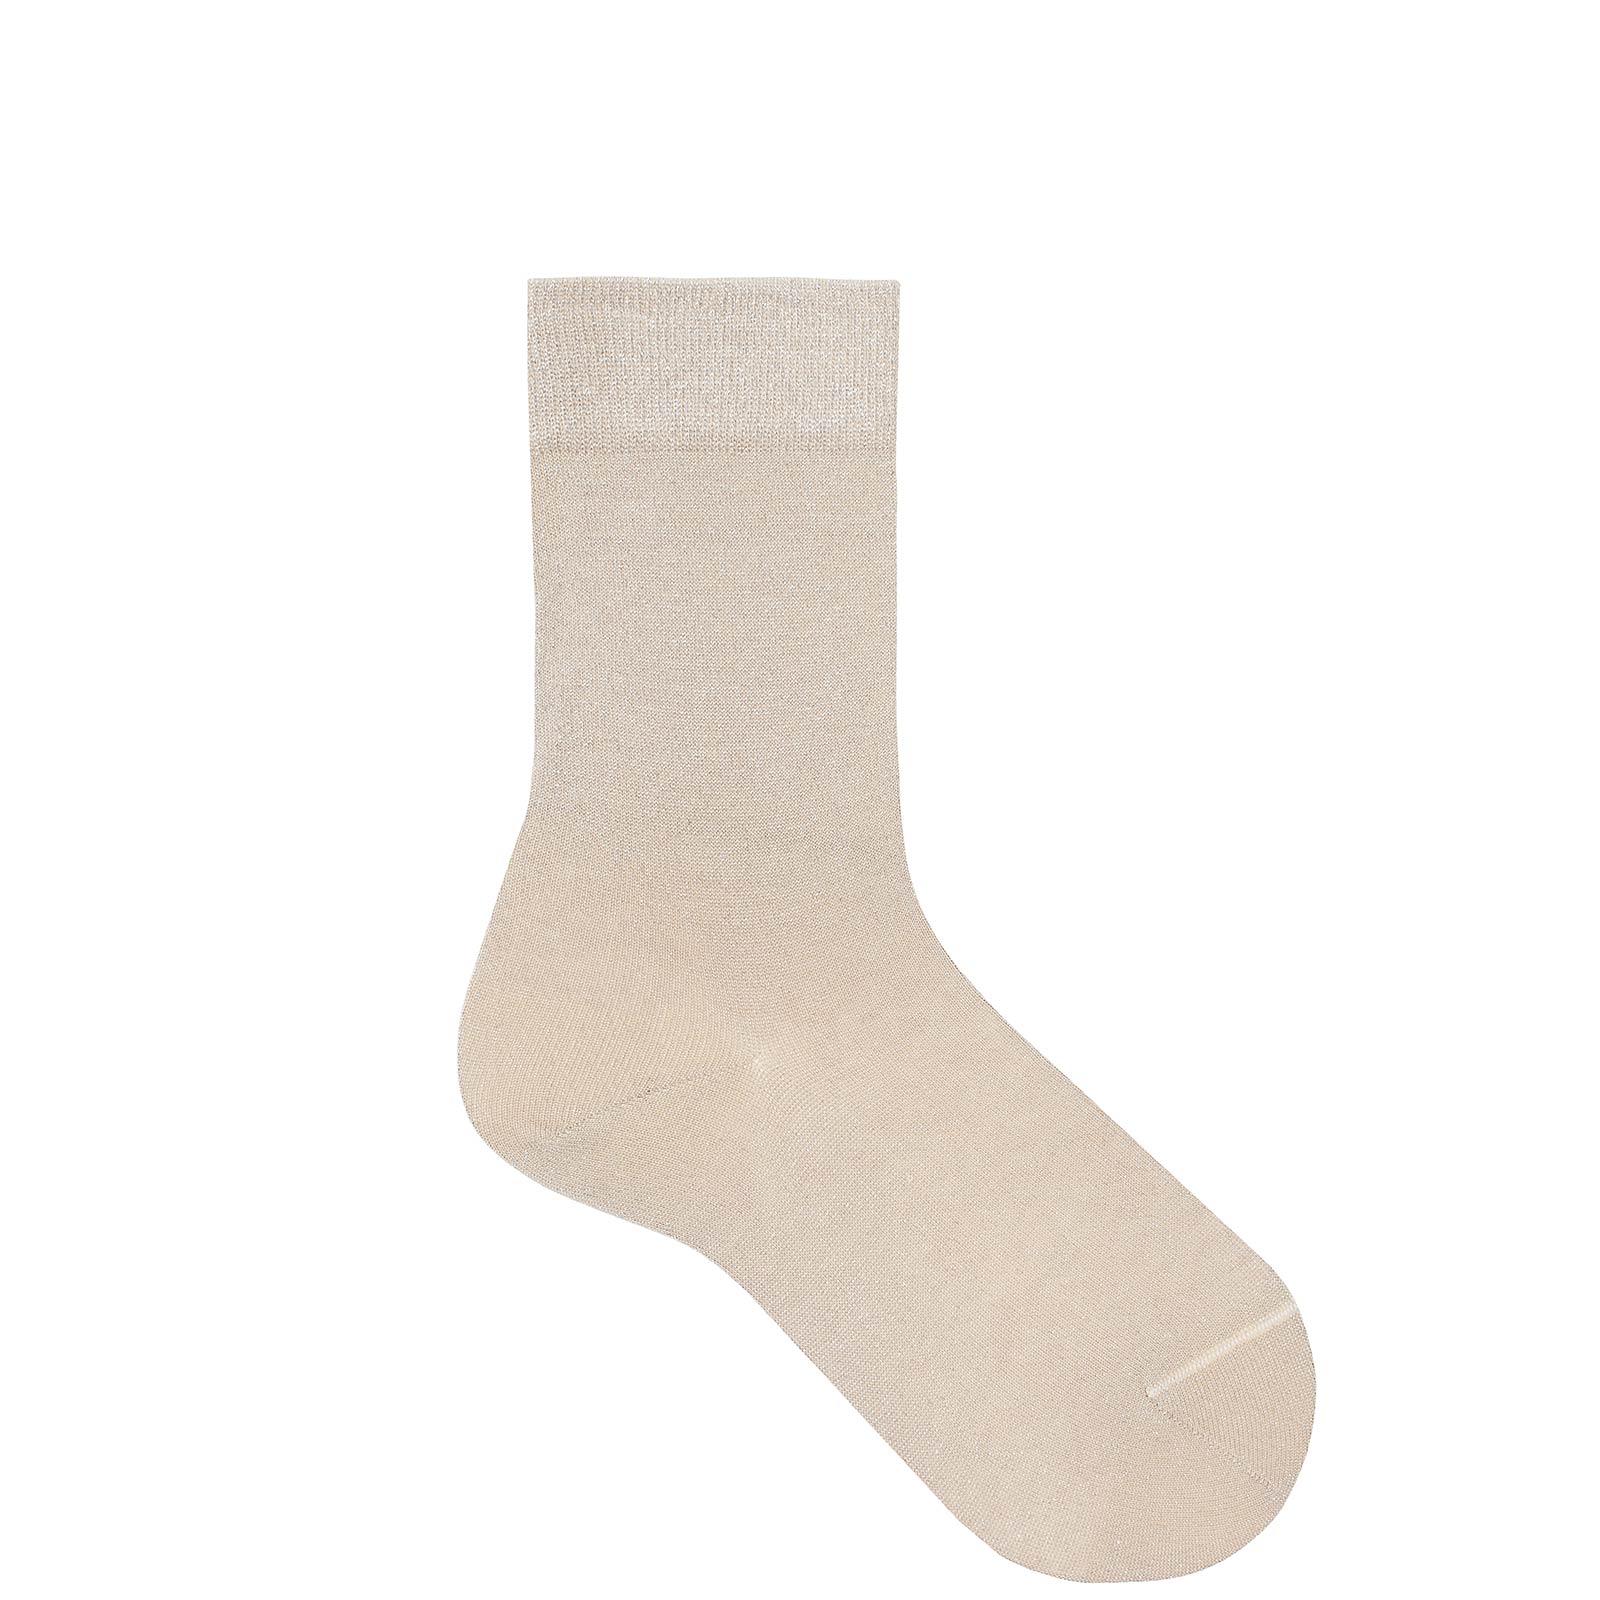 KUNERT Damen GLIMMER - 35/38 - Damen Socken mit modischem Glanz-Effekt - Beige Gold (Beige)